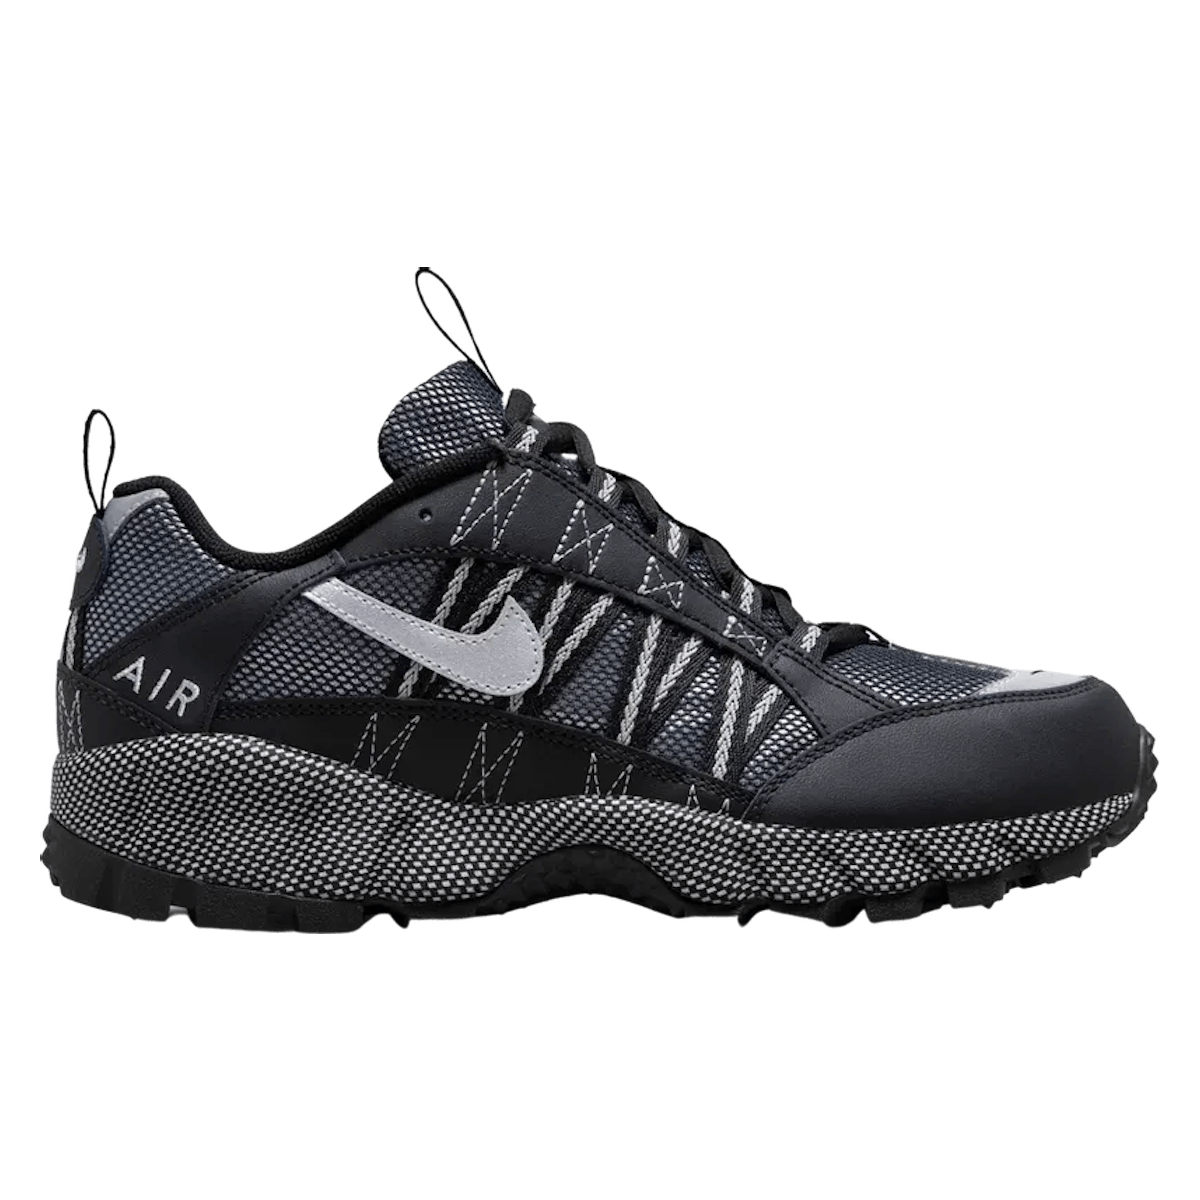 Nike Air Humara QS "Black Metallic Silver"